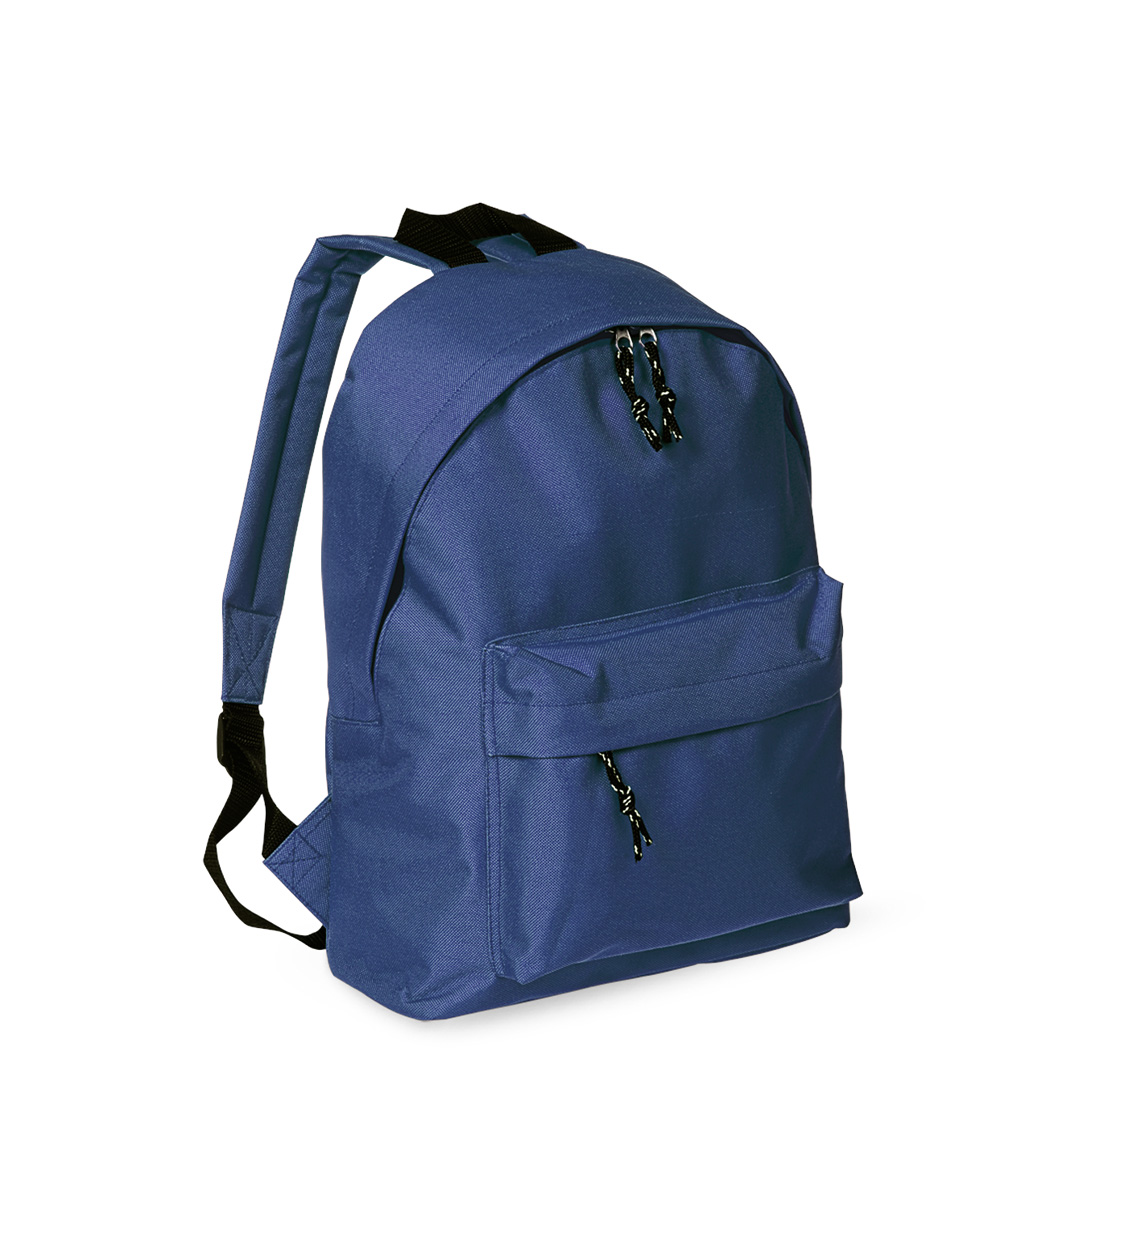 Discovery backpack - blau